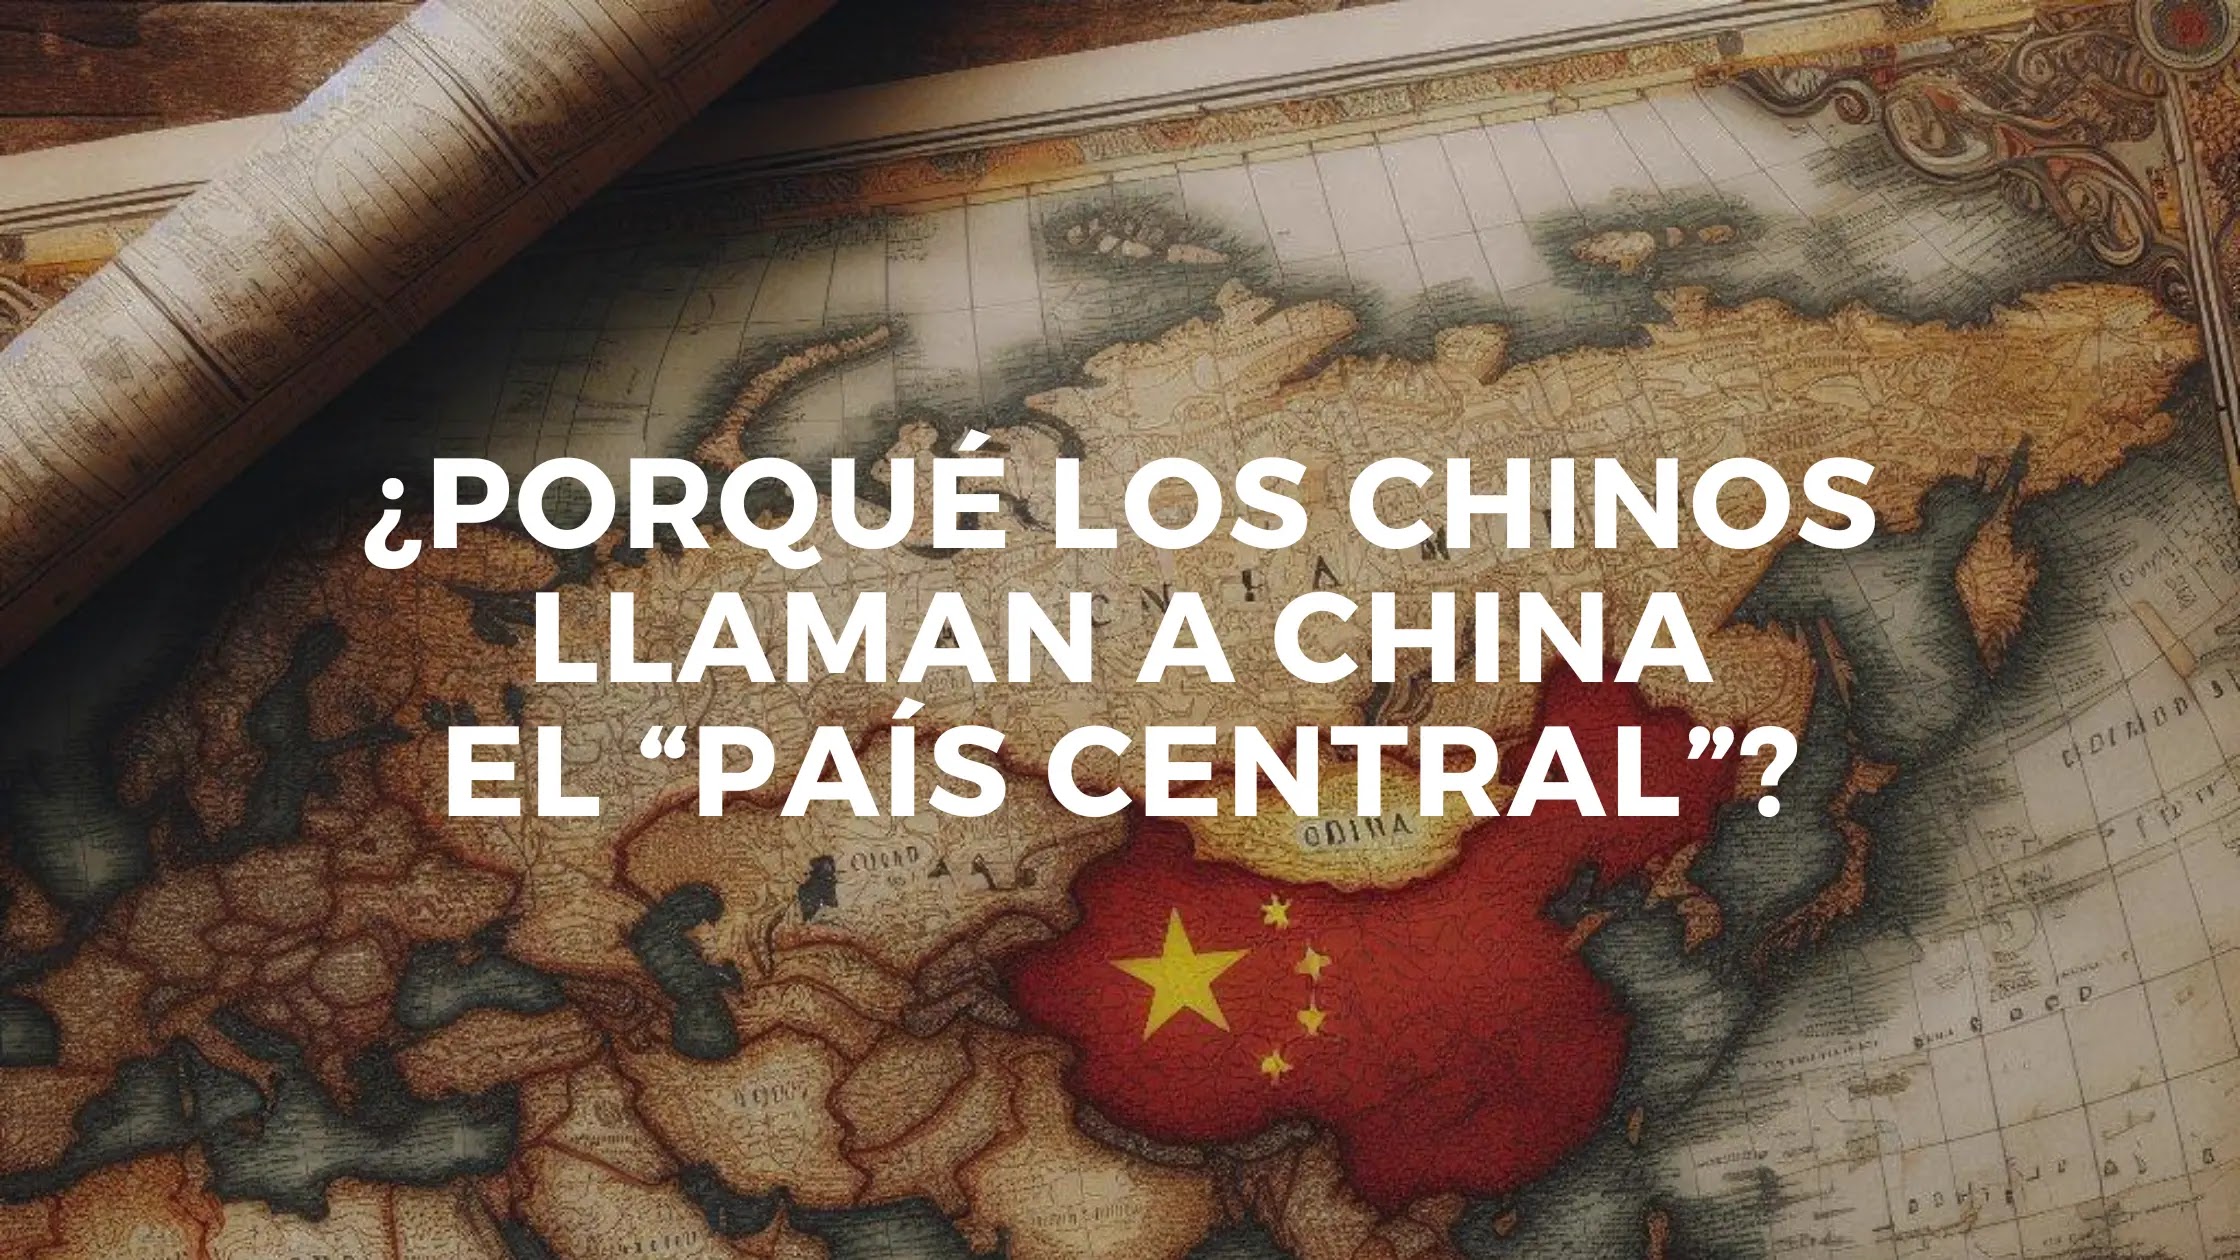 Porqué los chinos llaman a China el “País Central”